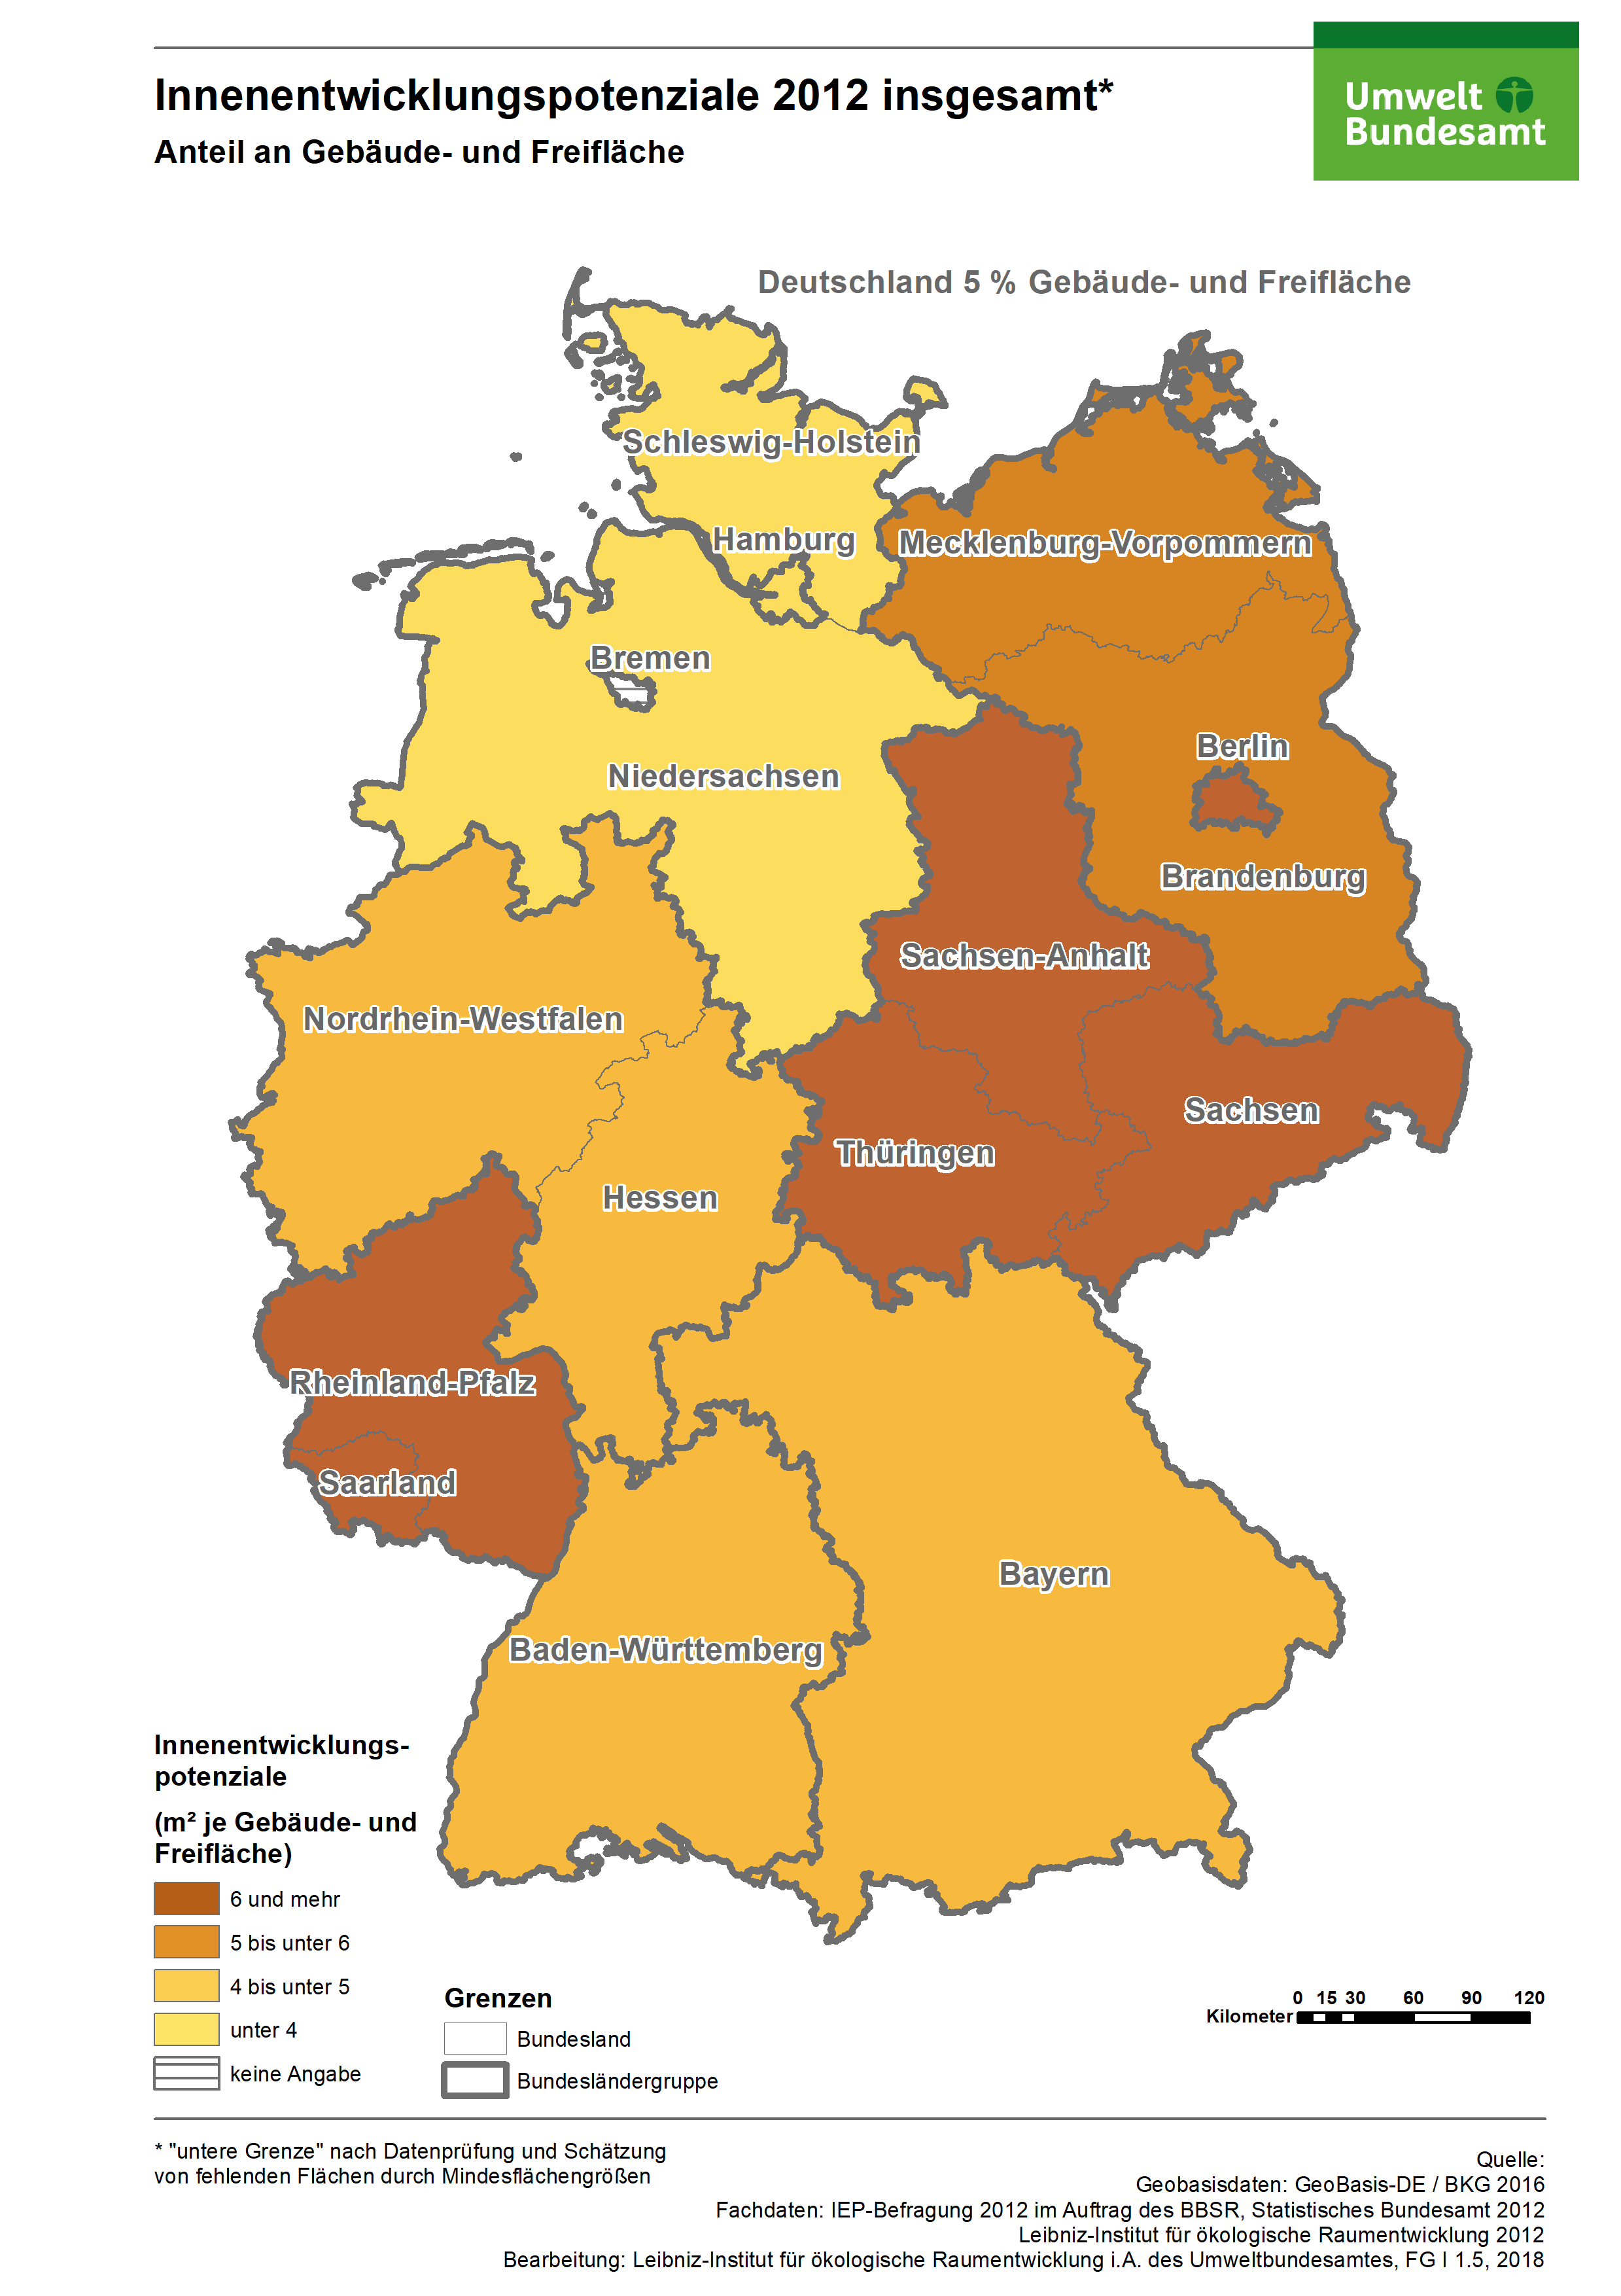 Innenentwicklungspotenziale je Gebäude- und Freifläche in Deutschland